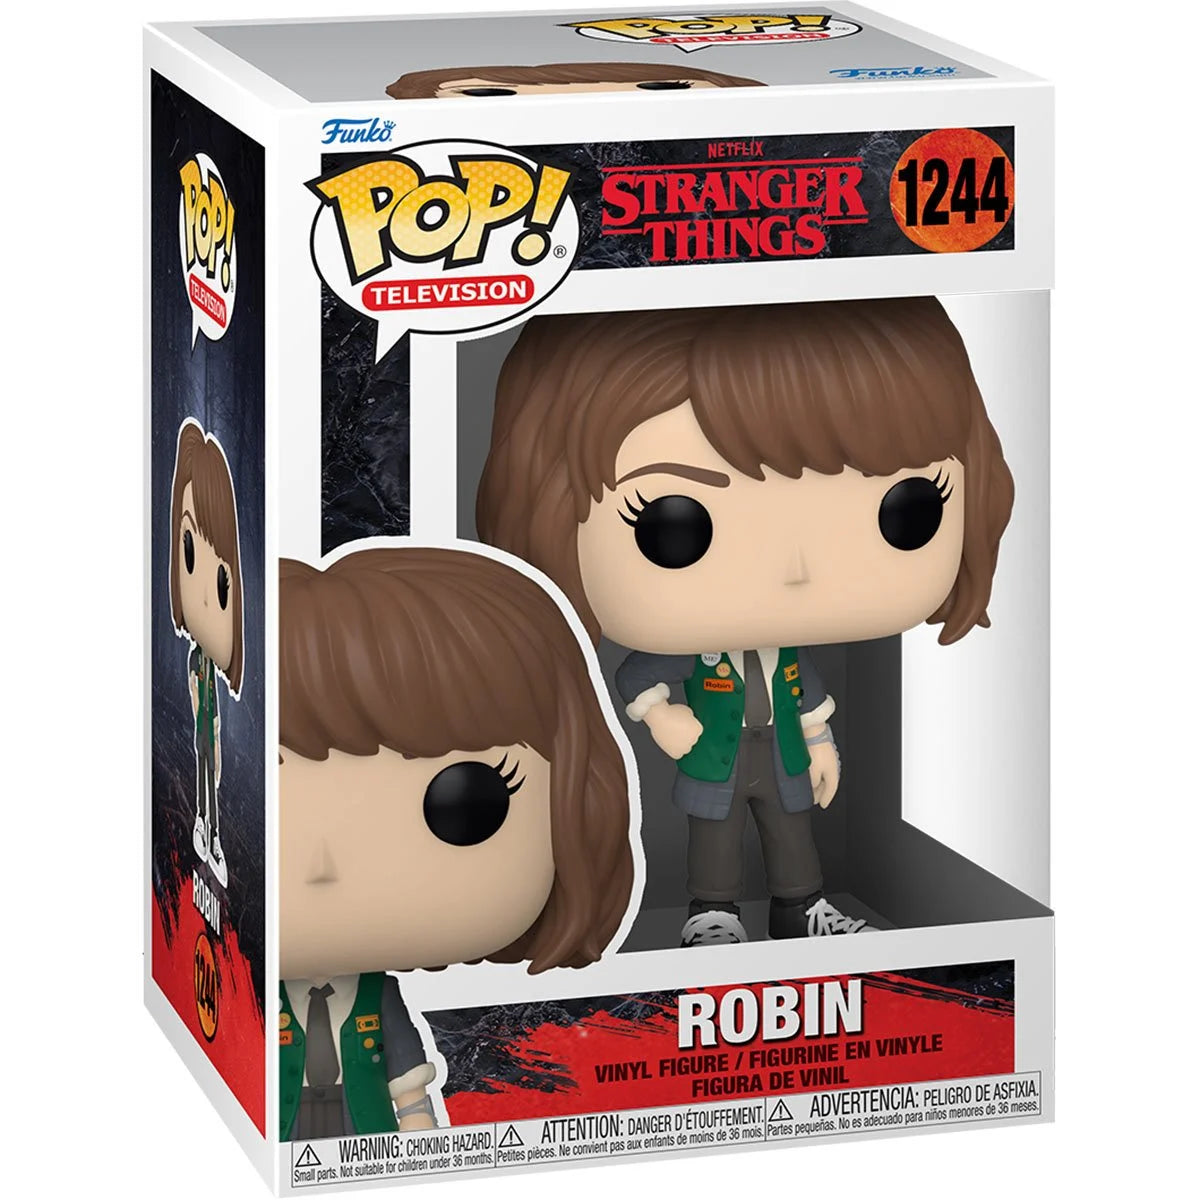 Robin Stranger Things Season 4 Pop! Vinyl Figure